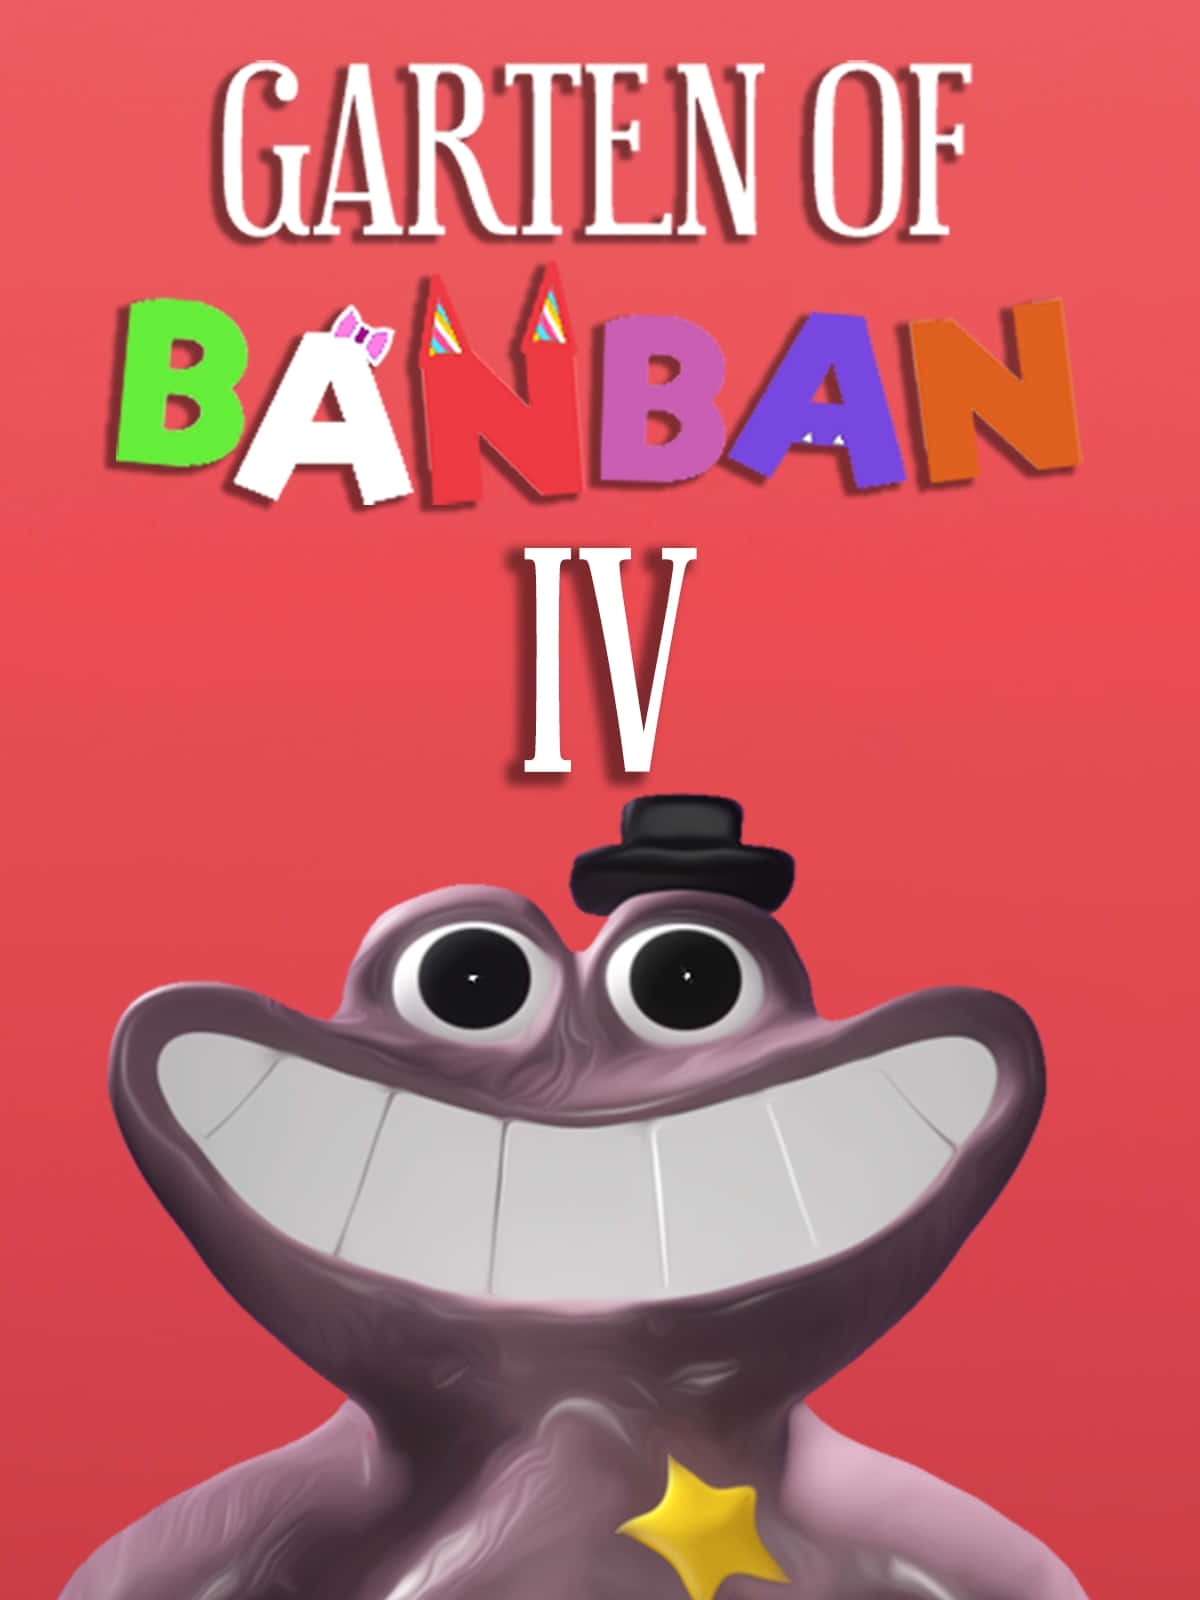 Gartenof Banban I V Poster Wallpaper